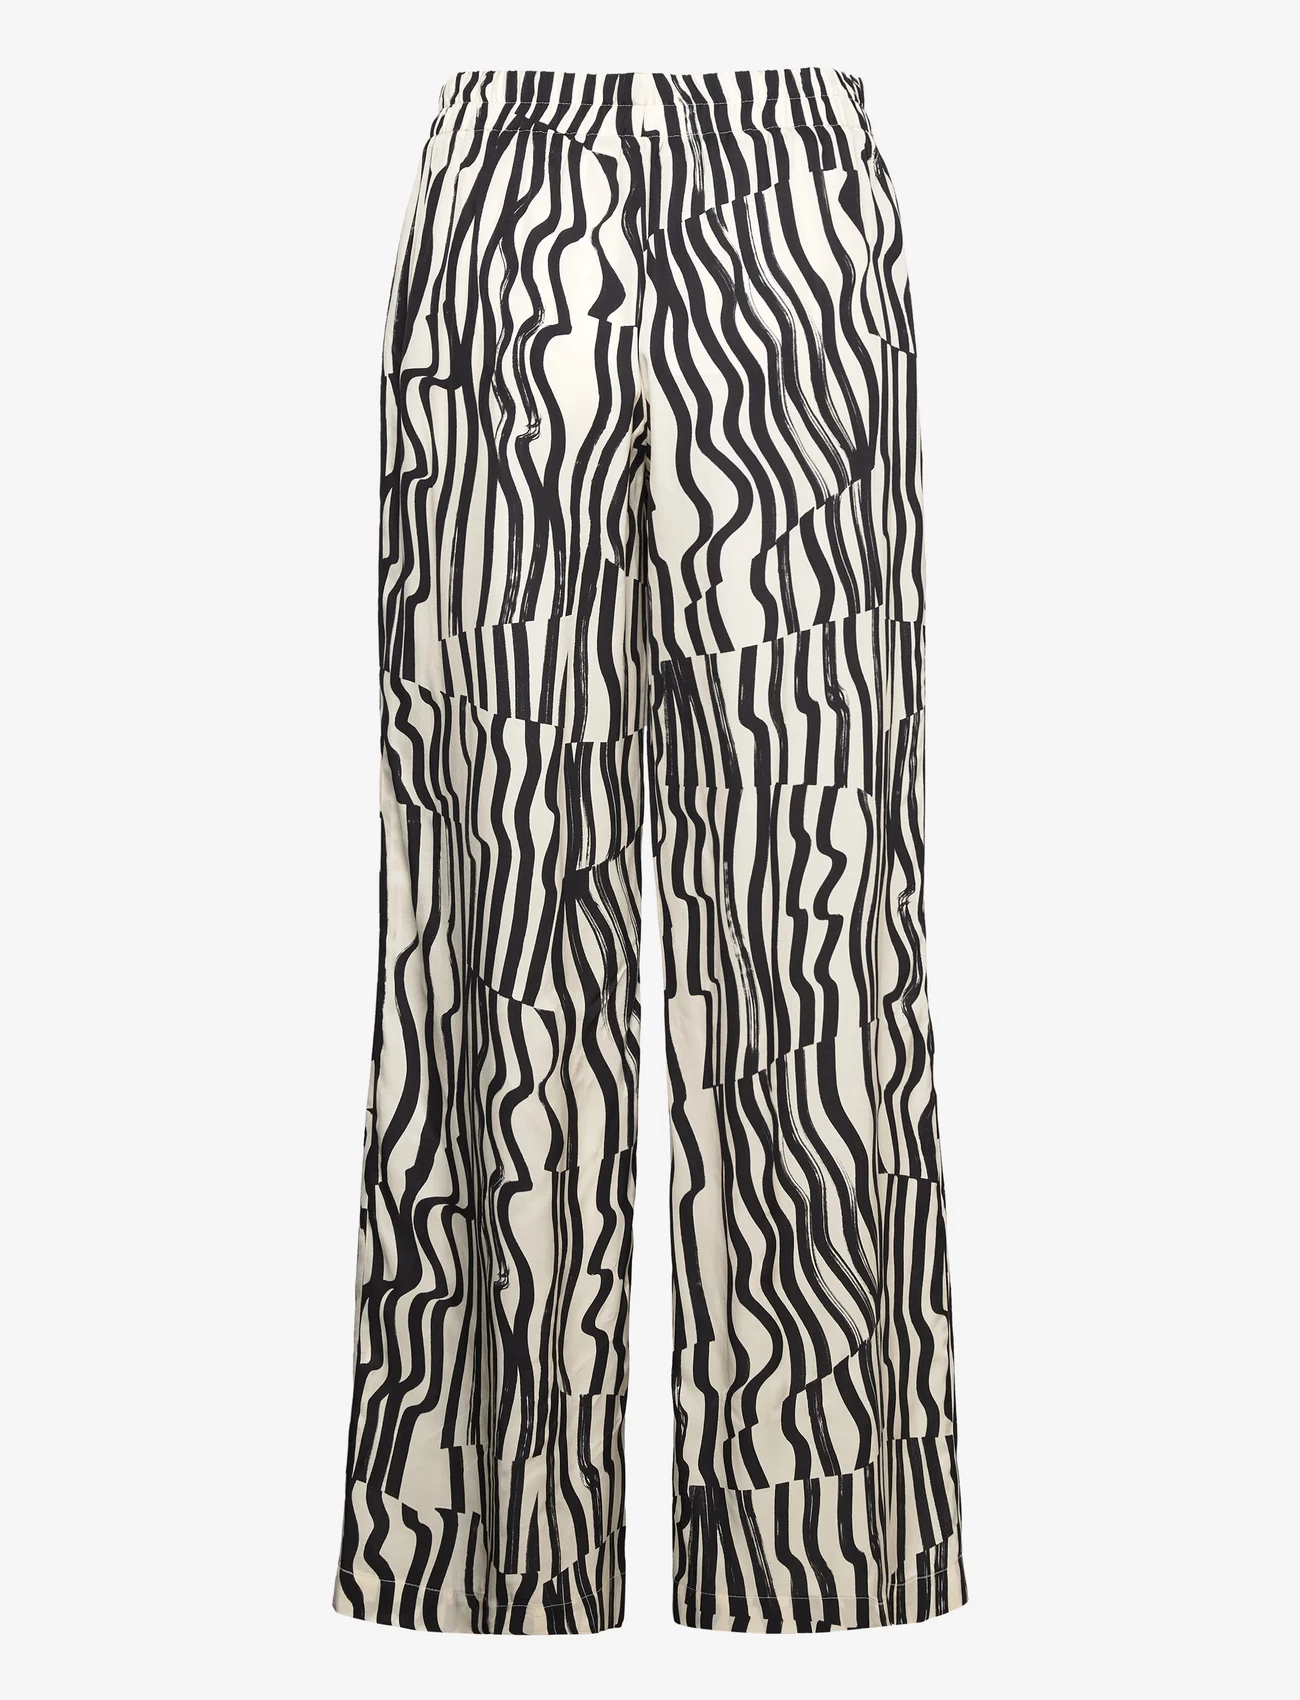 Andiata - Rochelle Print Trousers - vakarėlių drabužiai išparduotuvių kainomis - beige stripes - 1